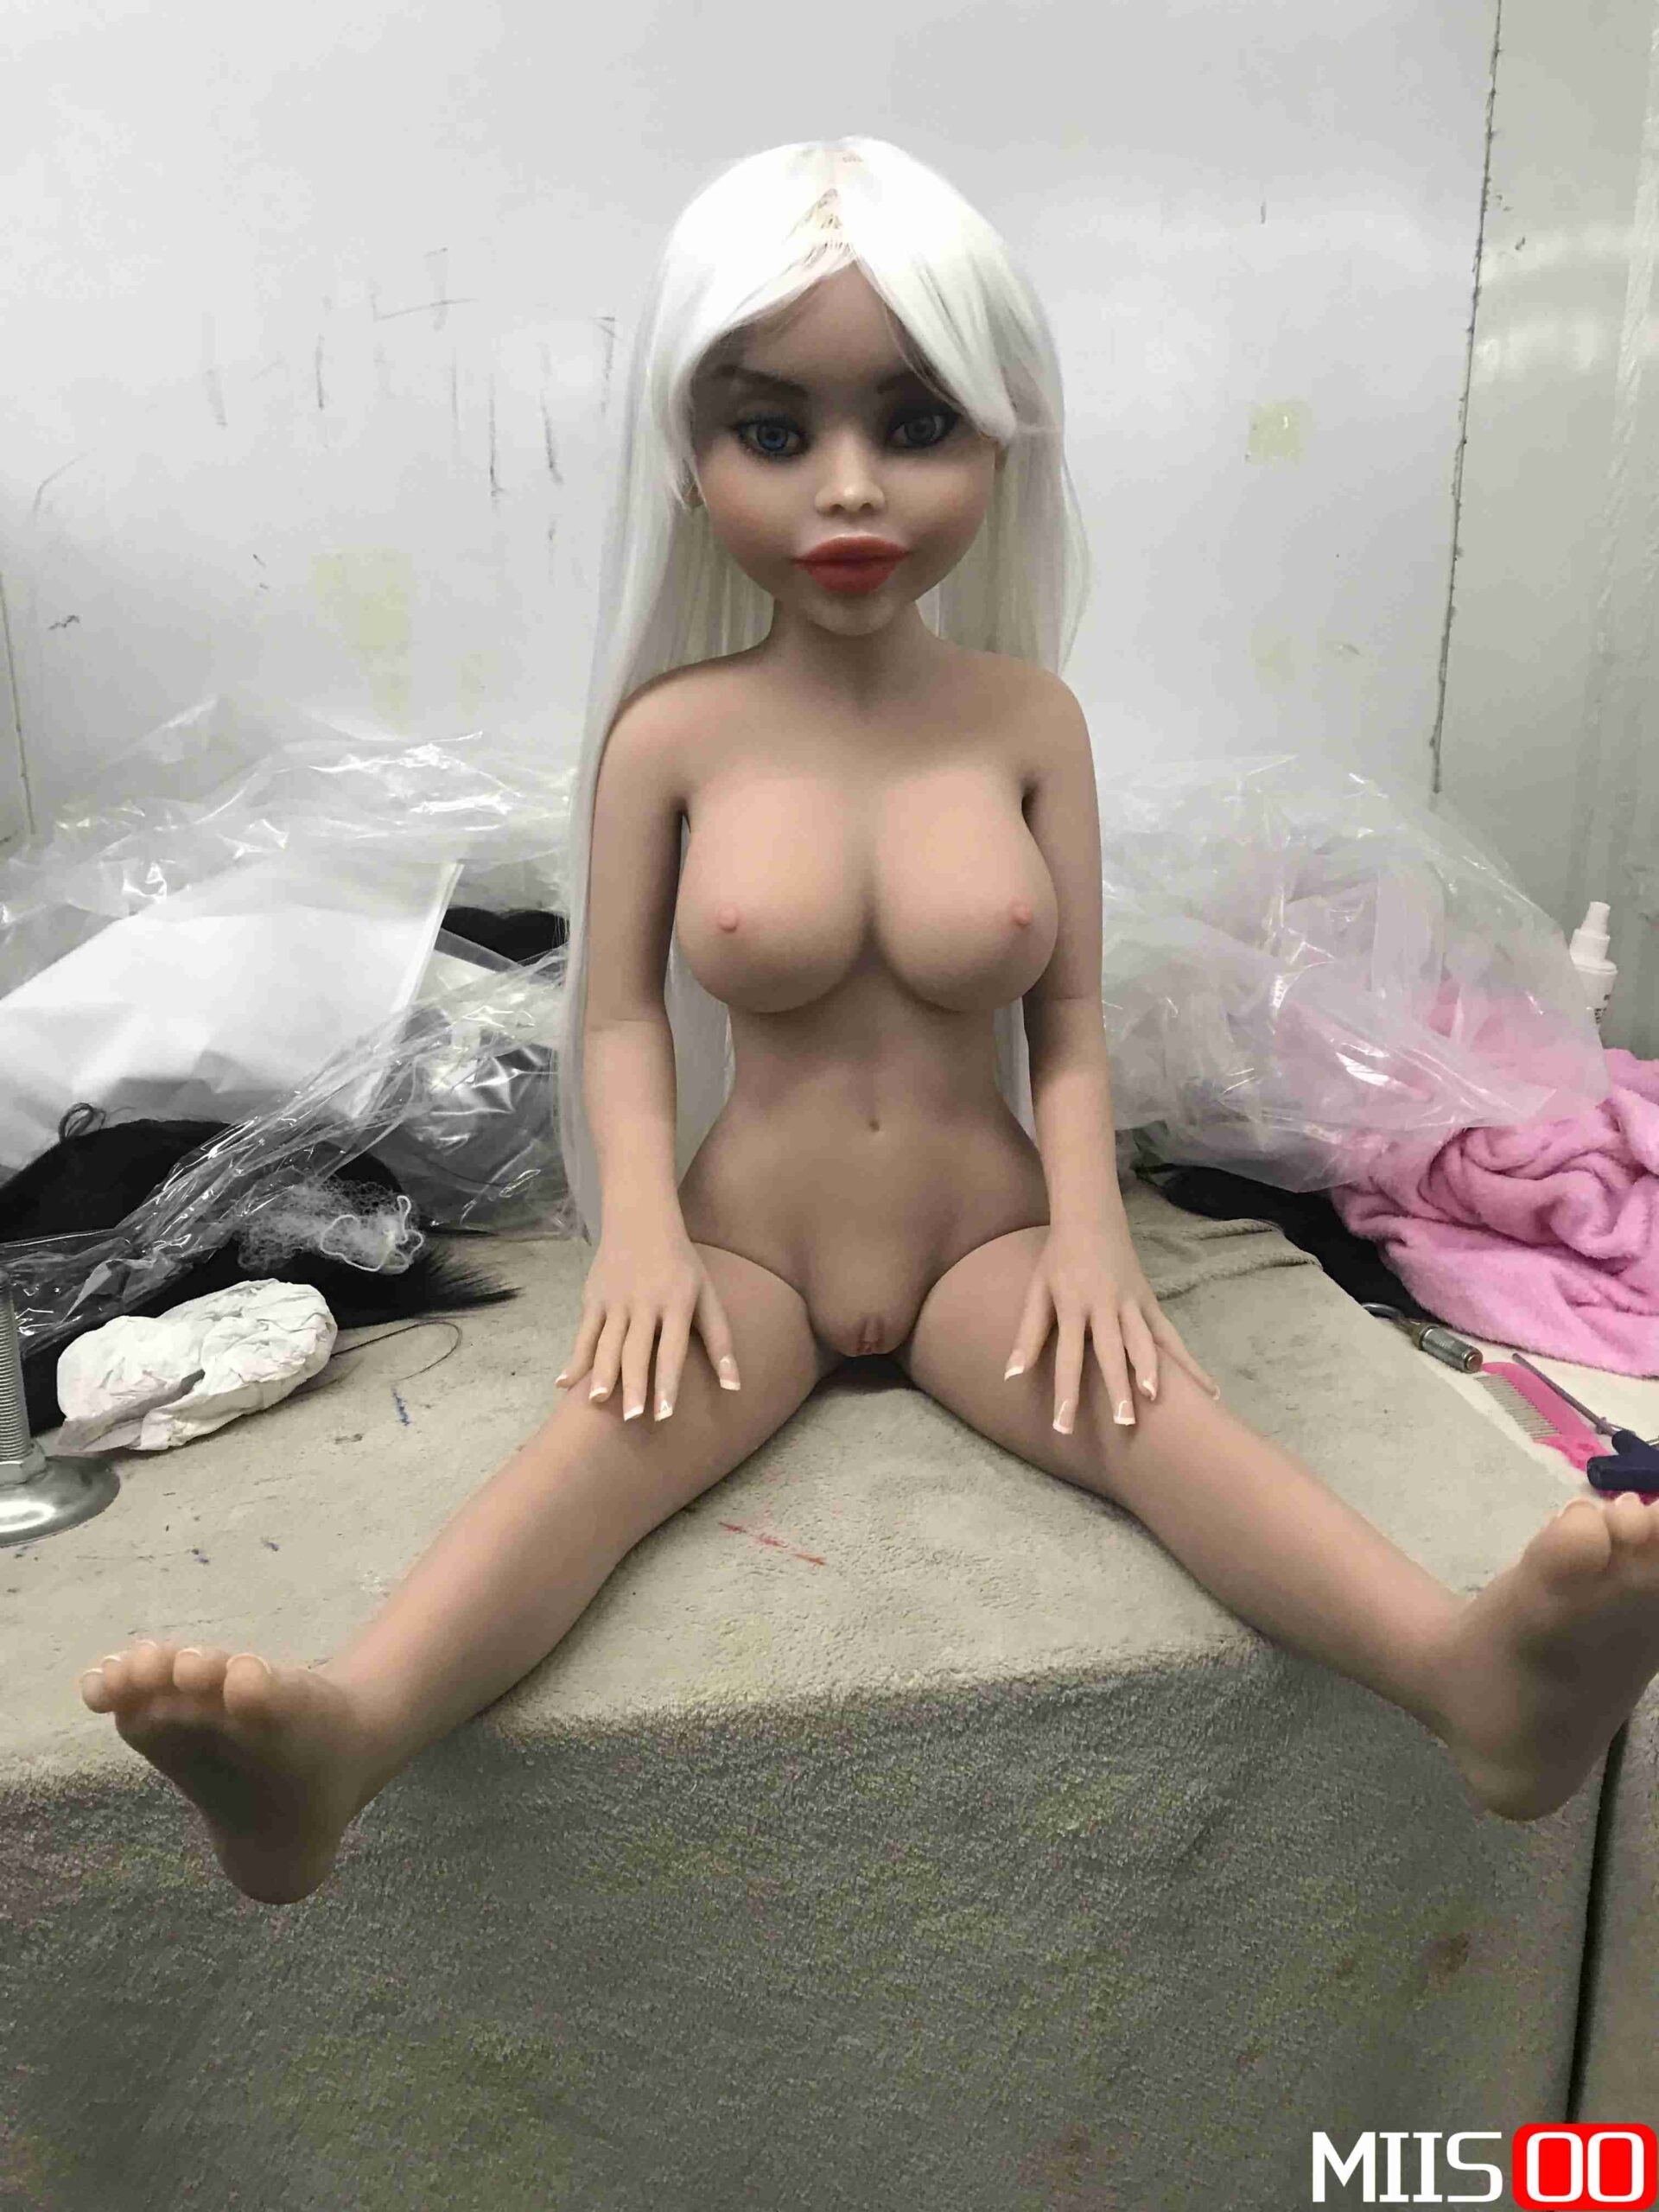 Galleria delle bambole del sesso -MiisooBambola